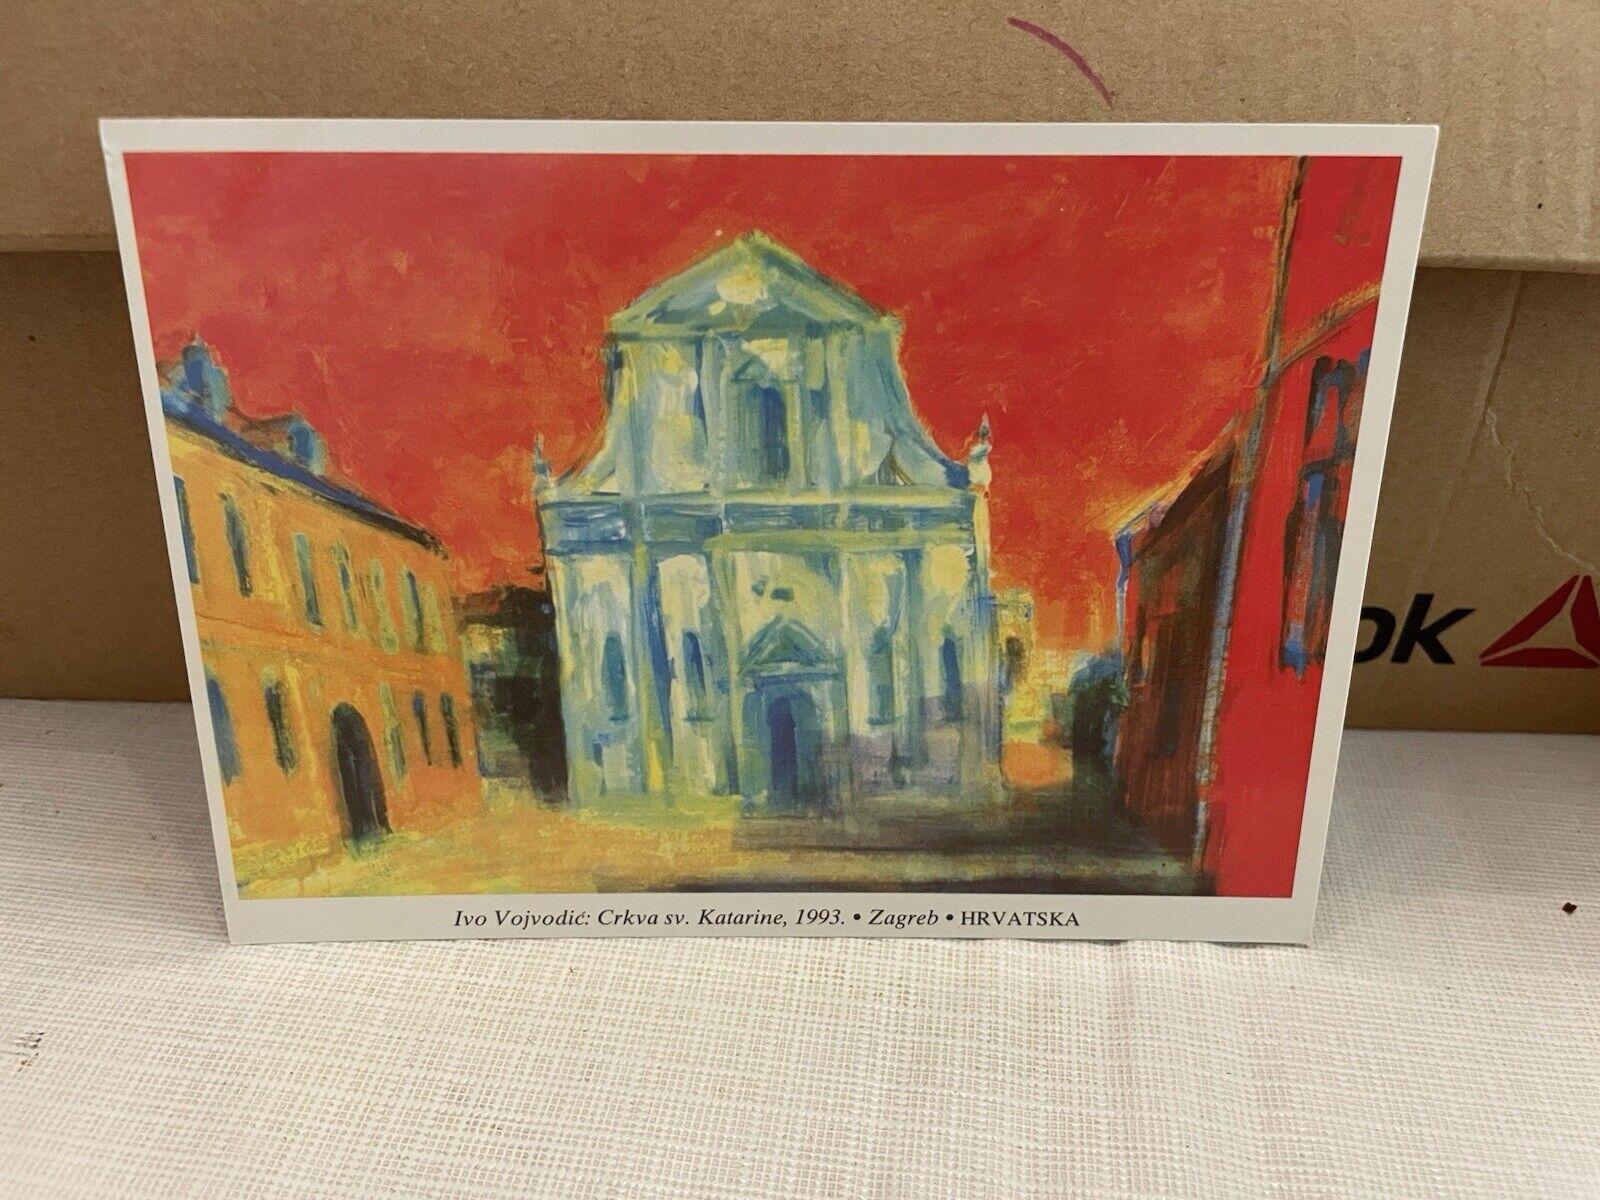 Vtg Postcard Artist Ivo Vojvodic Painting Crkva sv. Katarine Croatia 1993 Unused